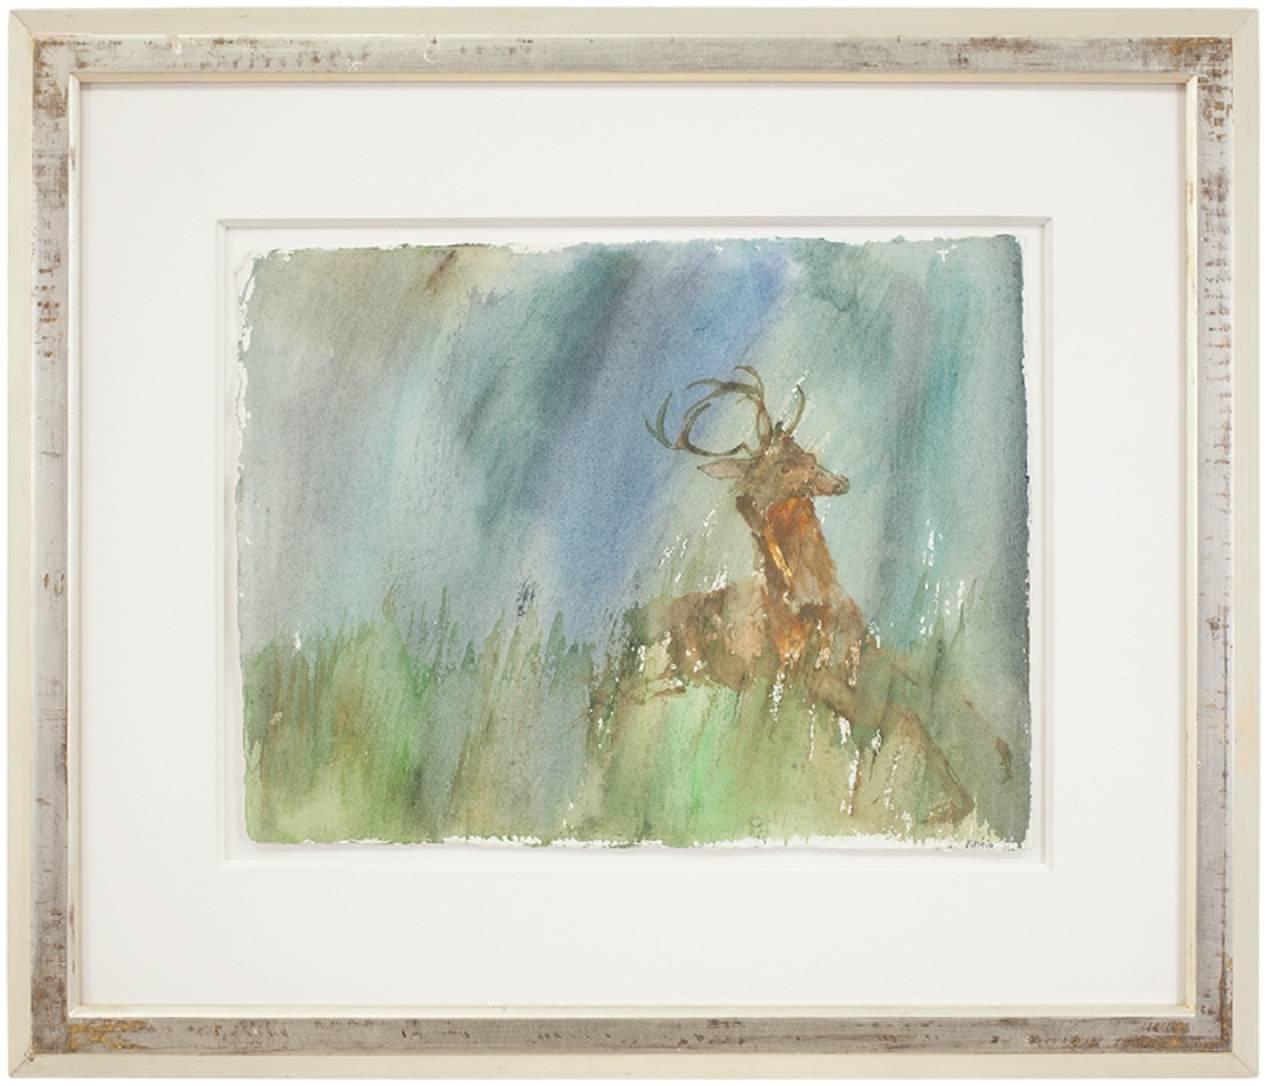 Rare Leonard Baskin Watercolor Seasons Song: Deer Illus. Ted Hughes Poem